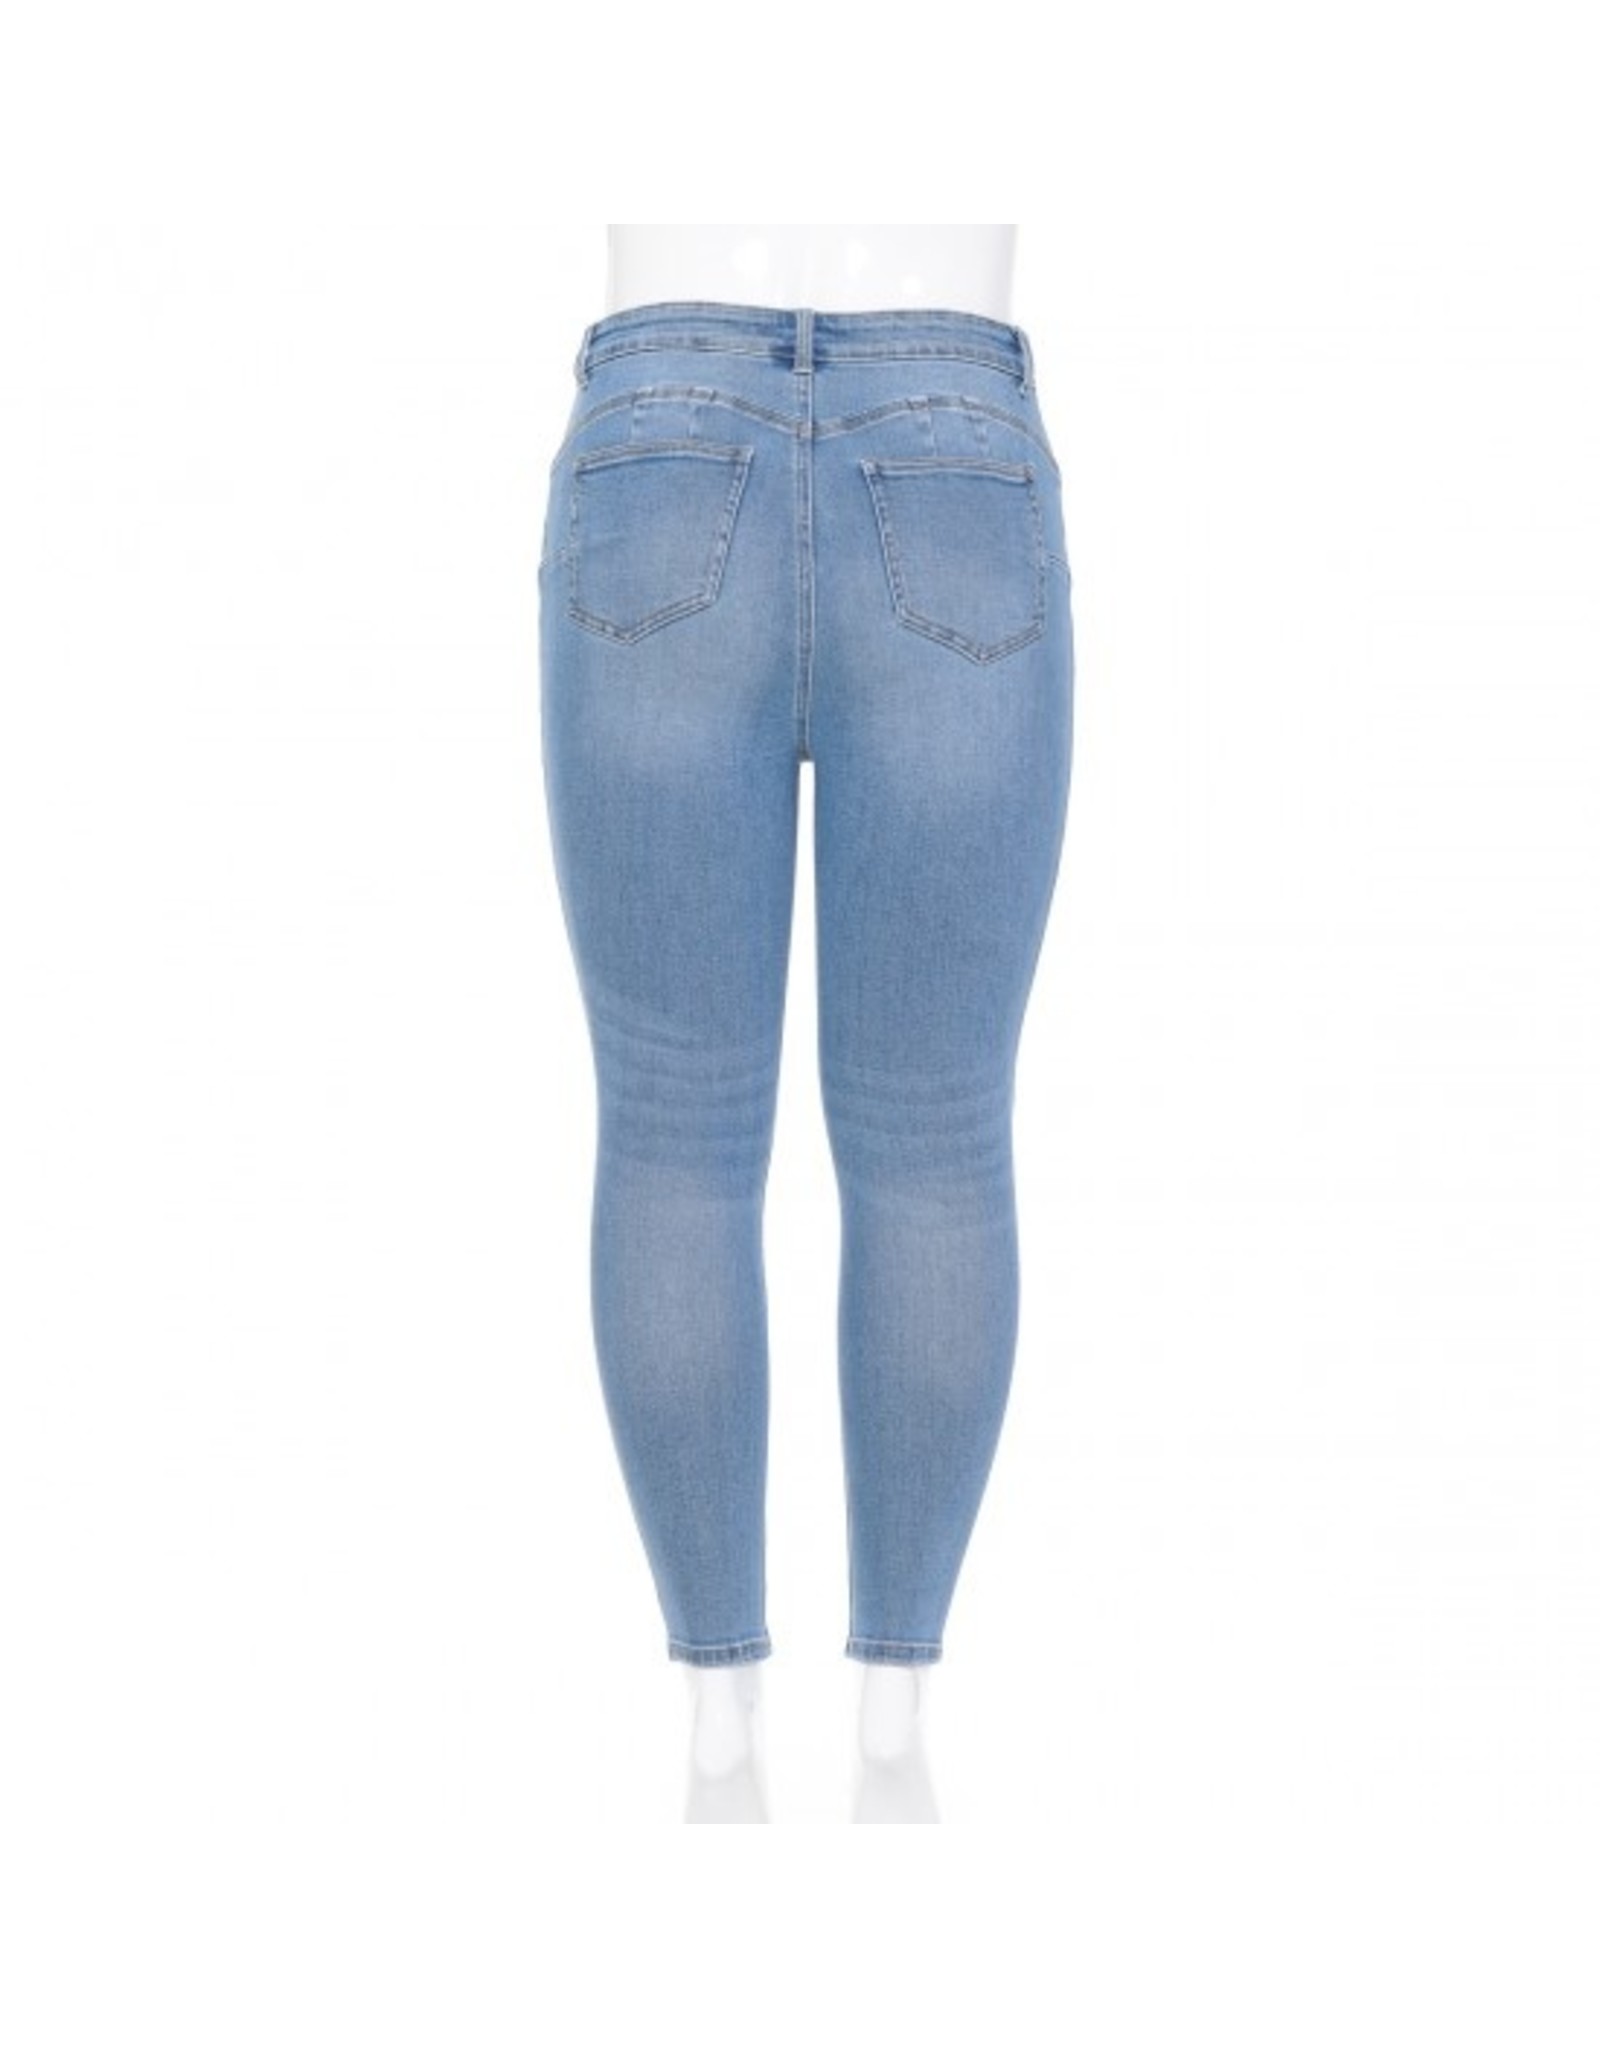 Women's Plus Size Push Up Jeans - 90800XL